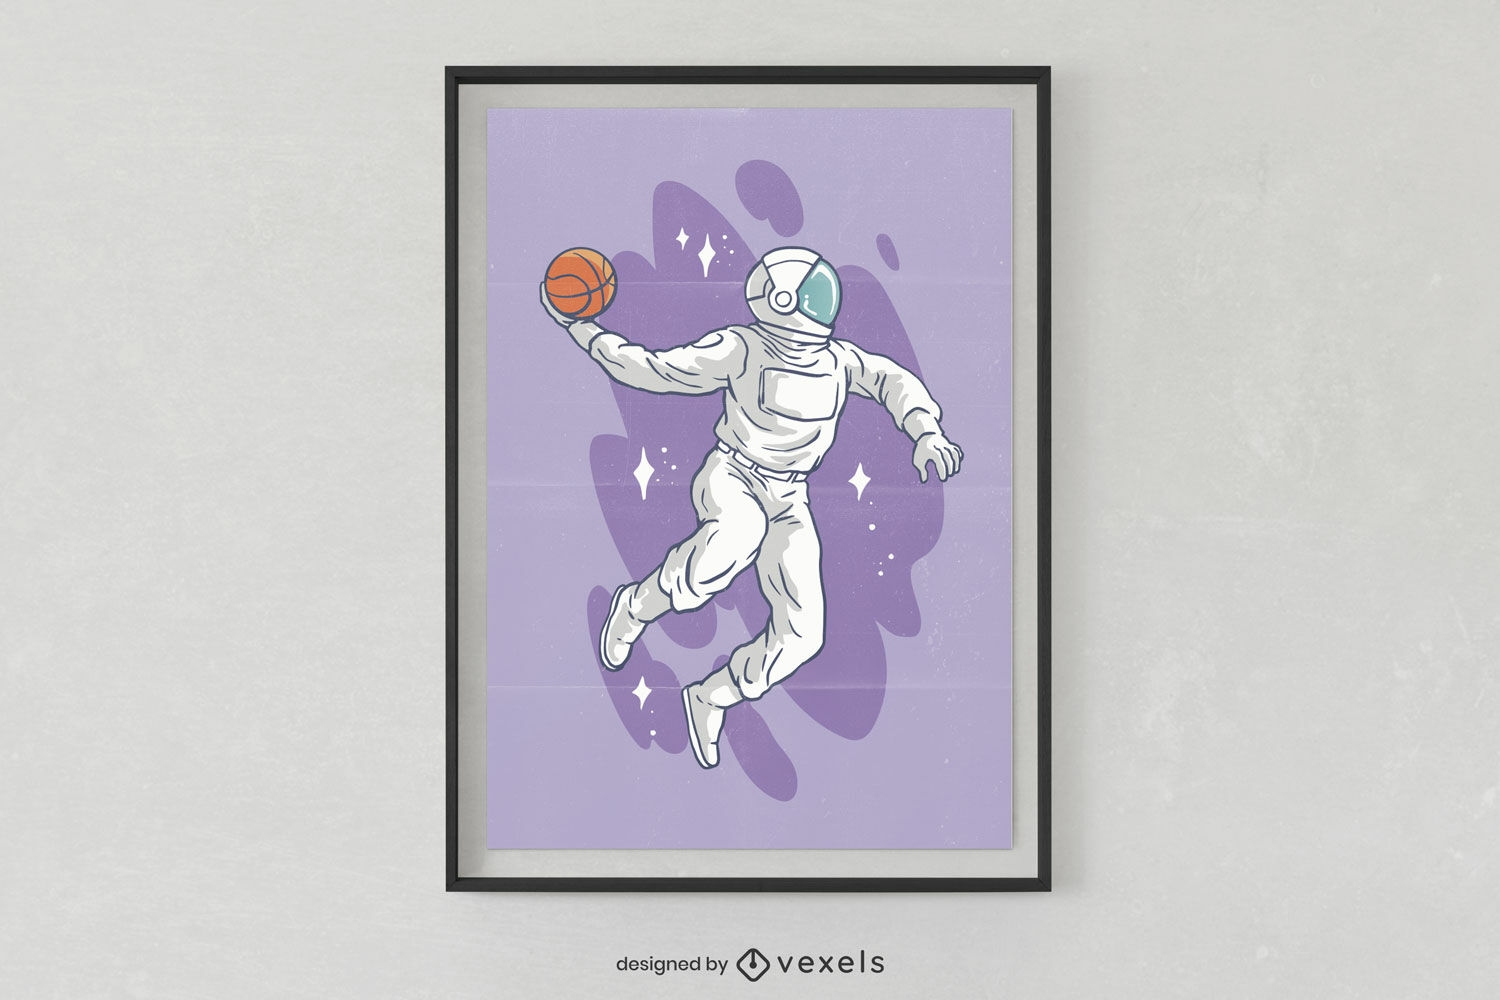 Póster con un astronauta jugando al baloncesto.